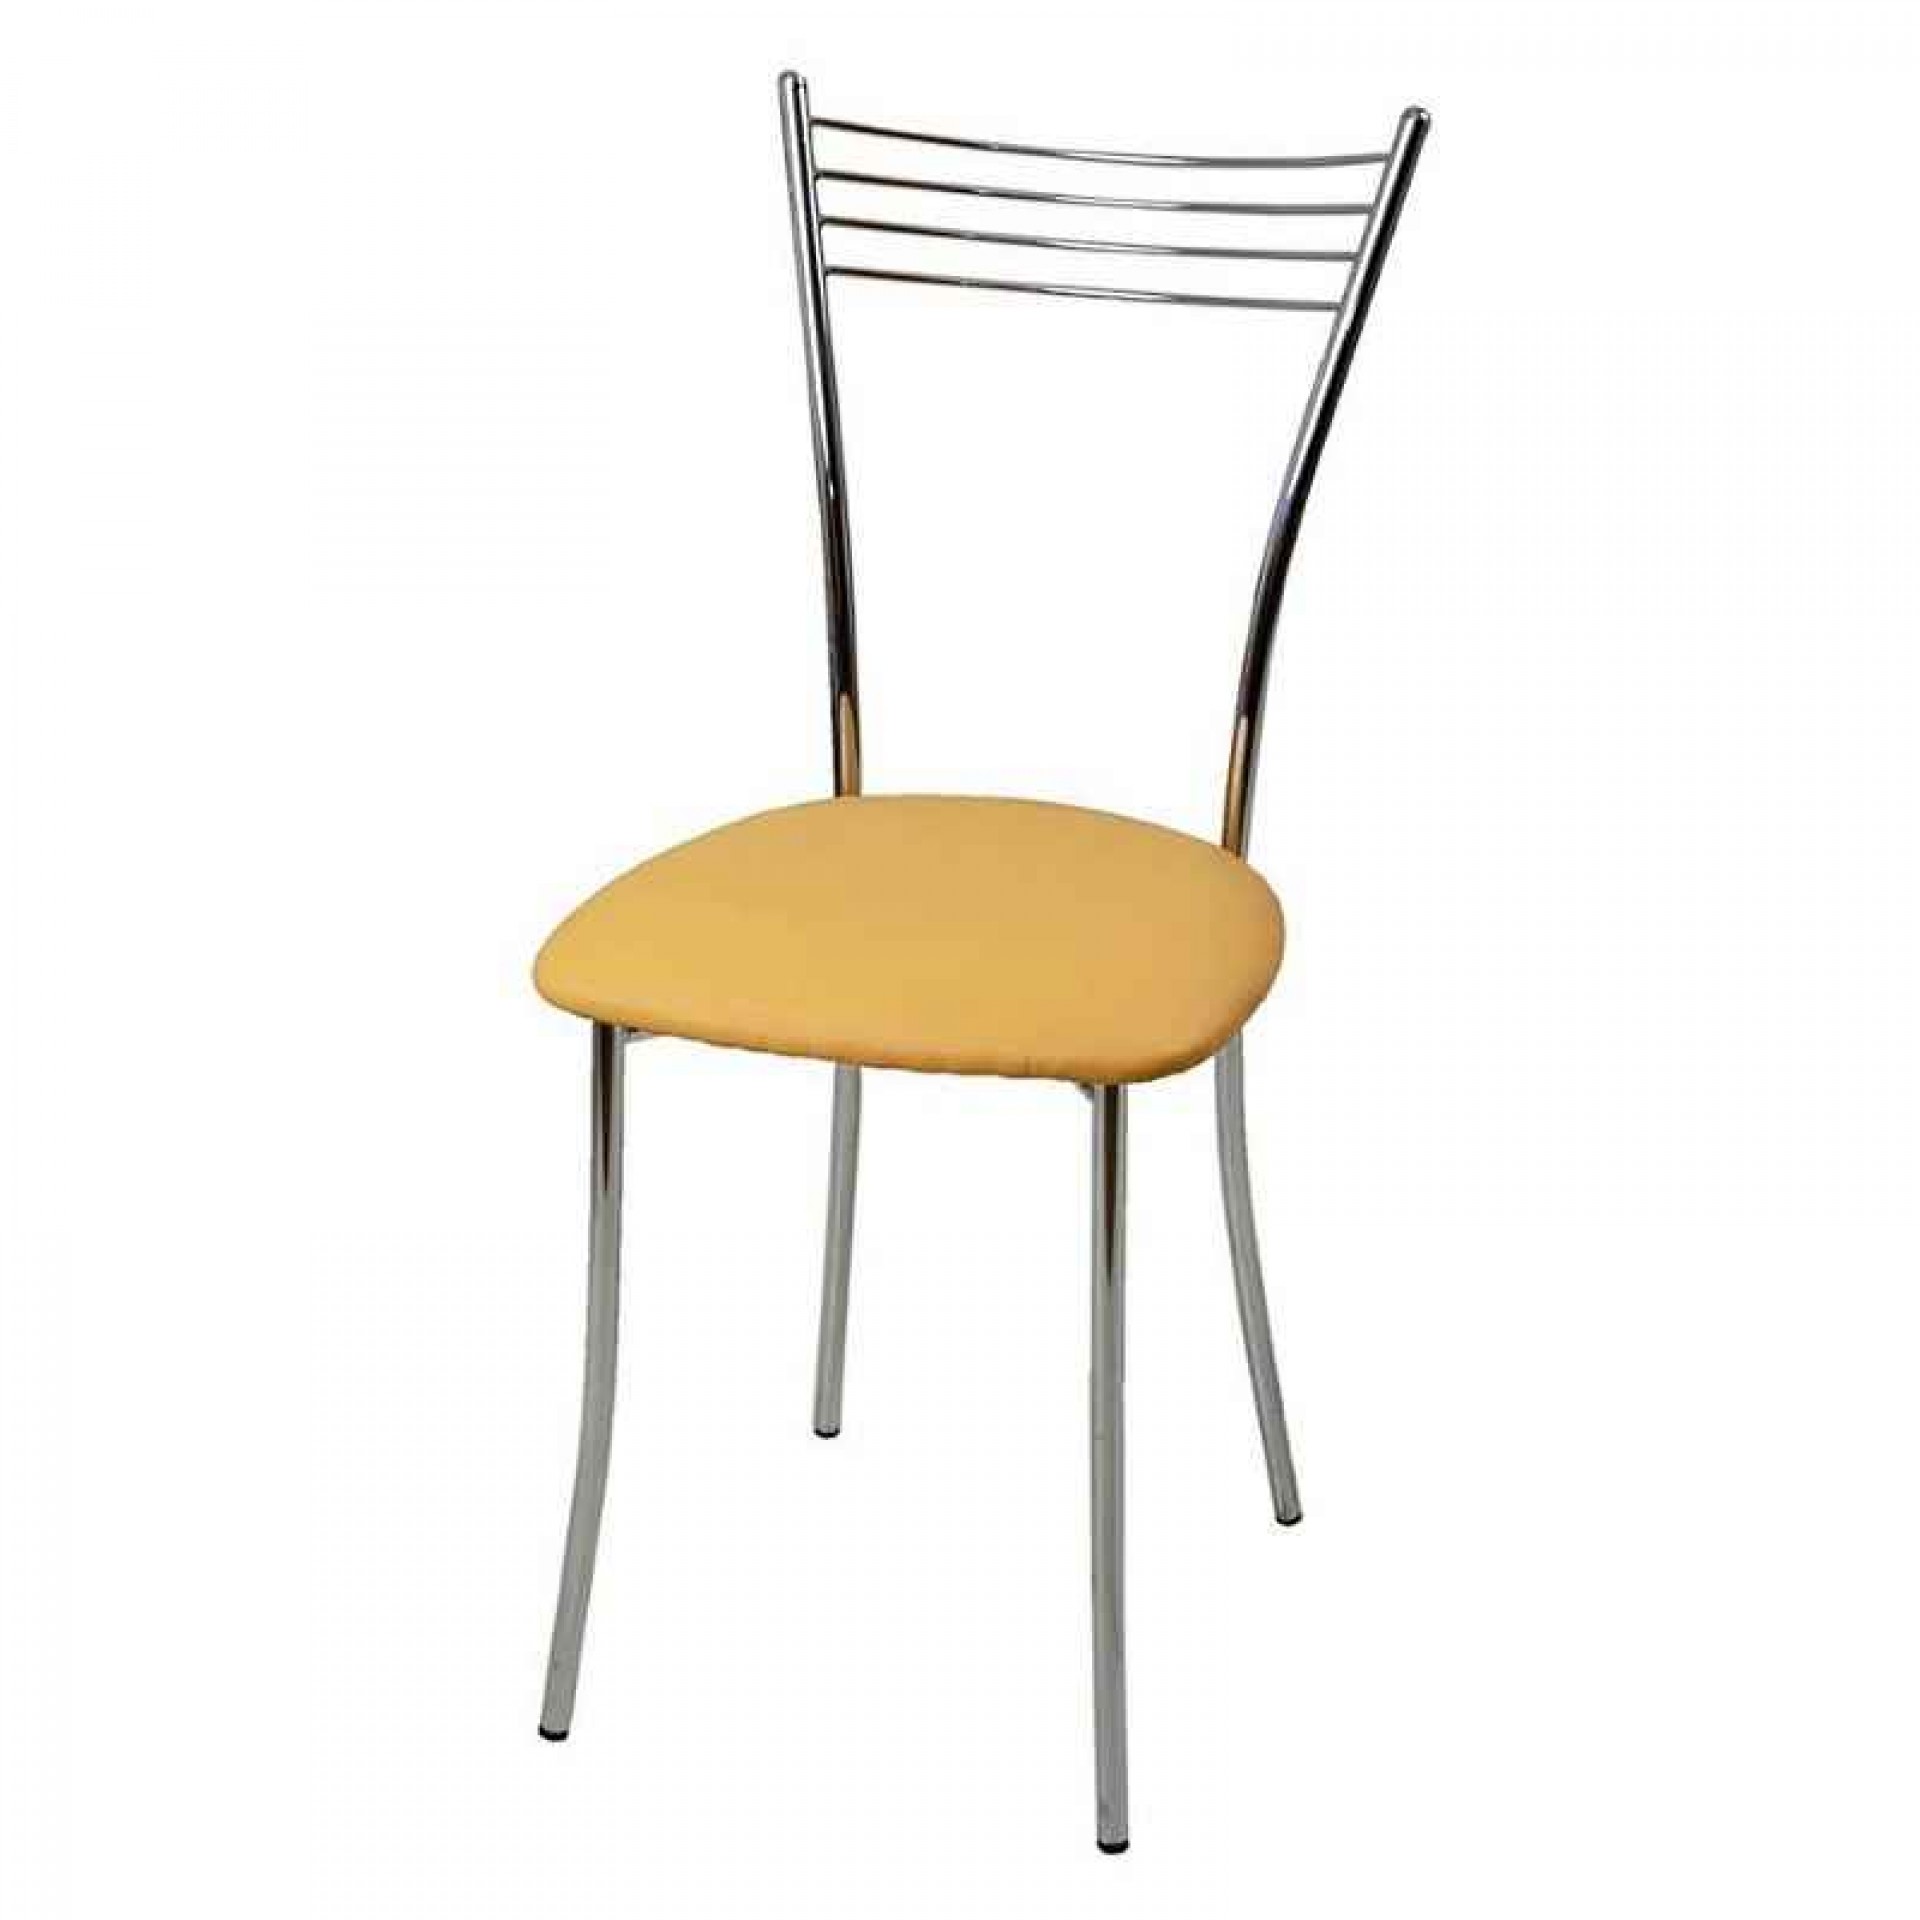 стулья для кухни стальные